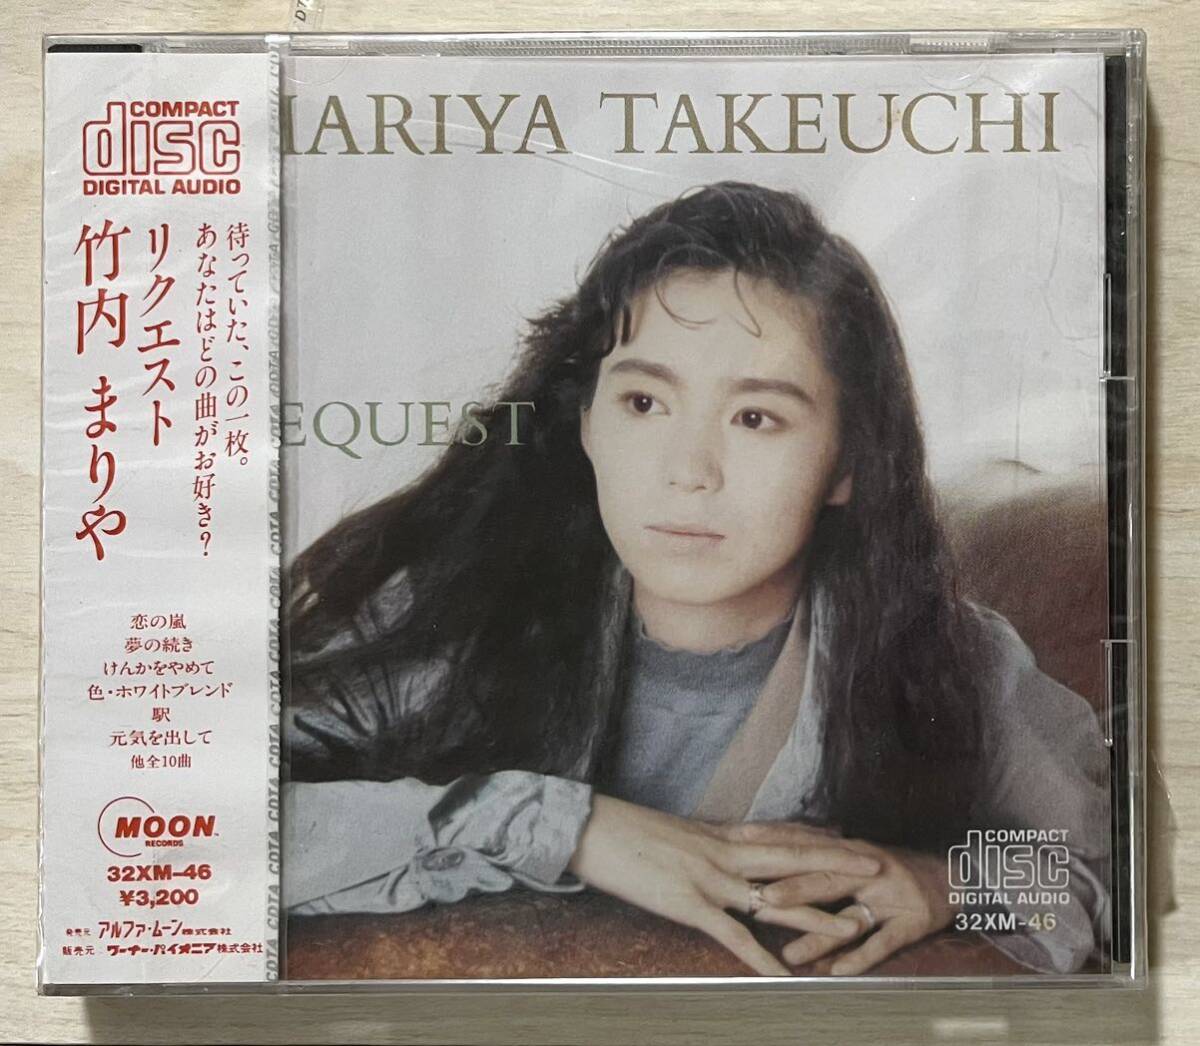  редкостный первый период стандарт нераспечатанный CD* Takeuchi Mariya / request альбом Yamashita Tatsuro производить Alpha moon 32XM-46 станция,.... прекратив, изначальный ... делать др. 